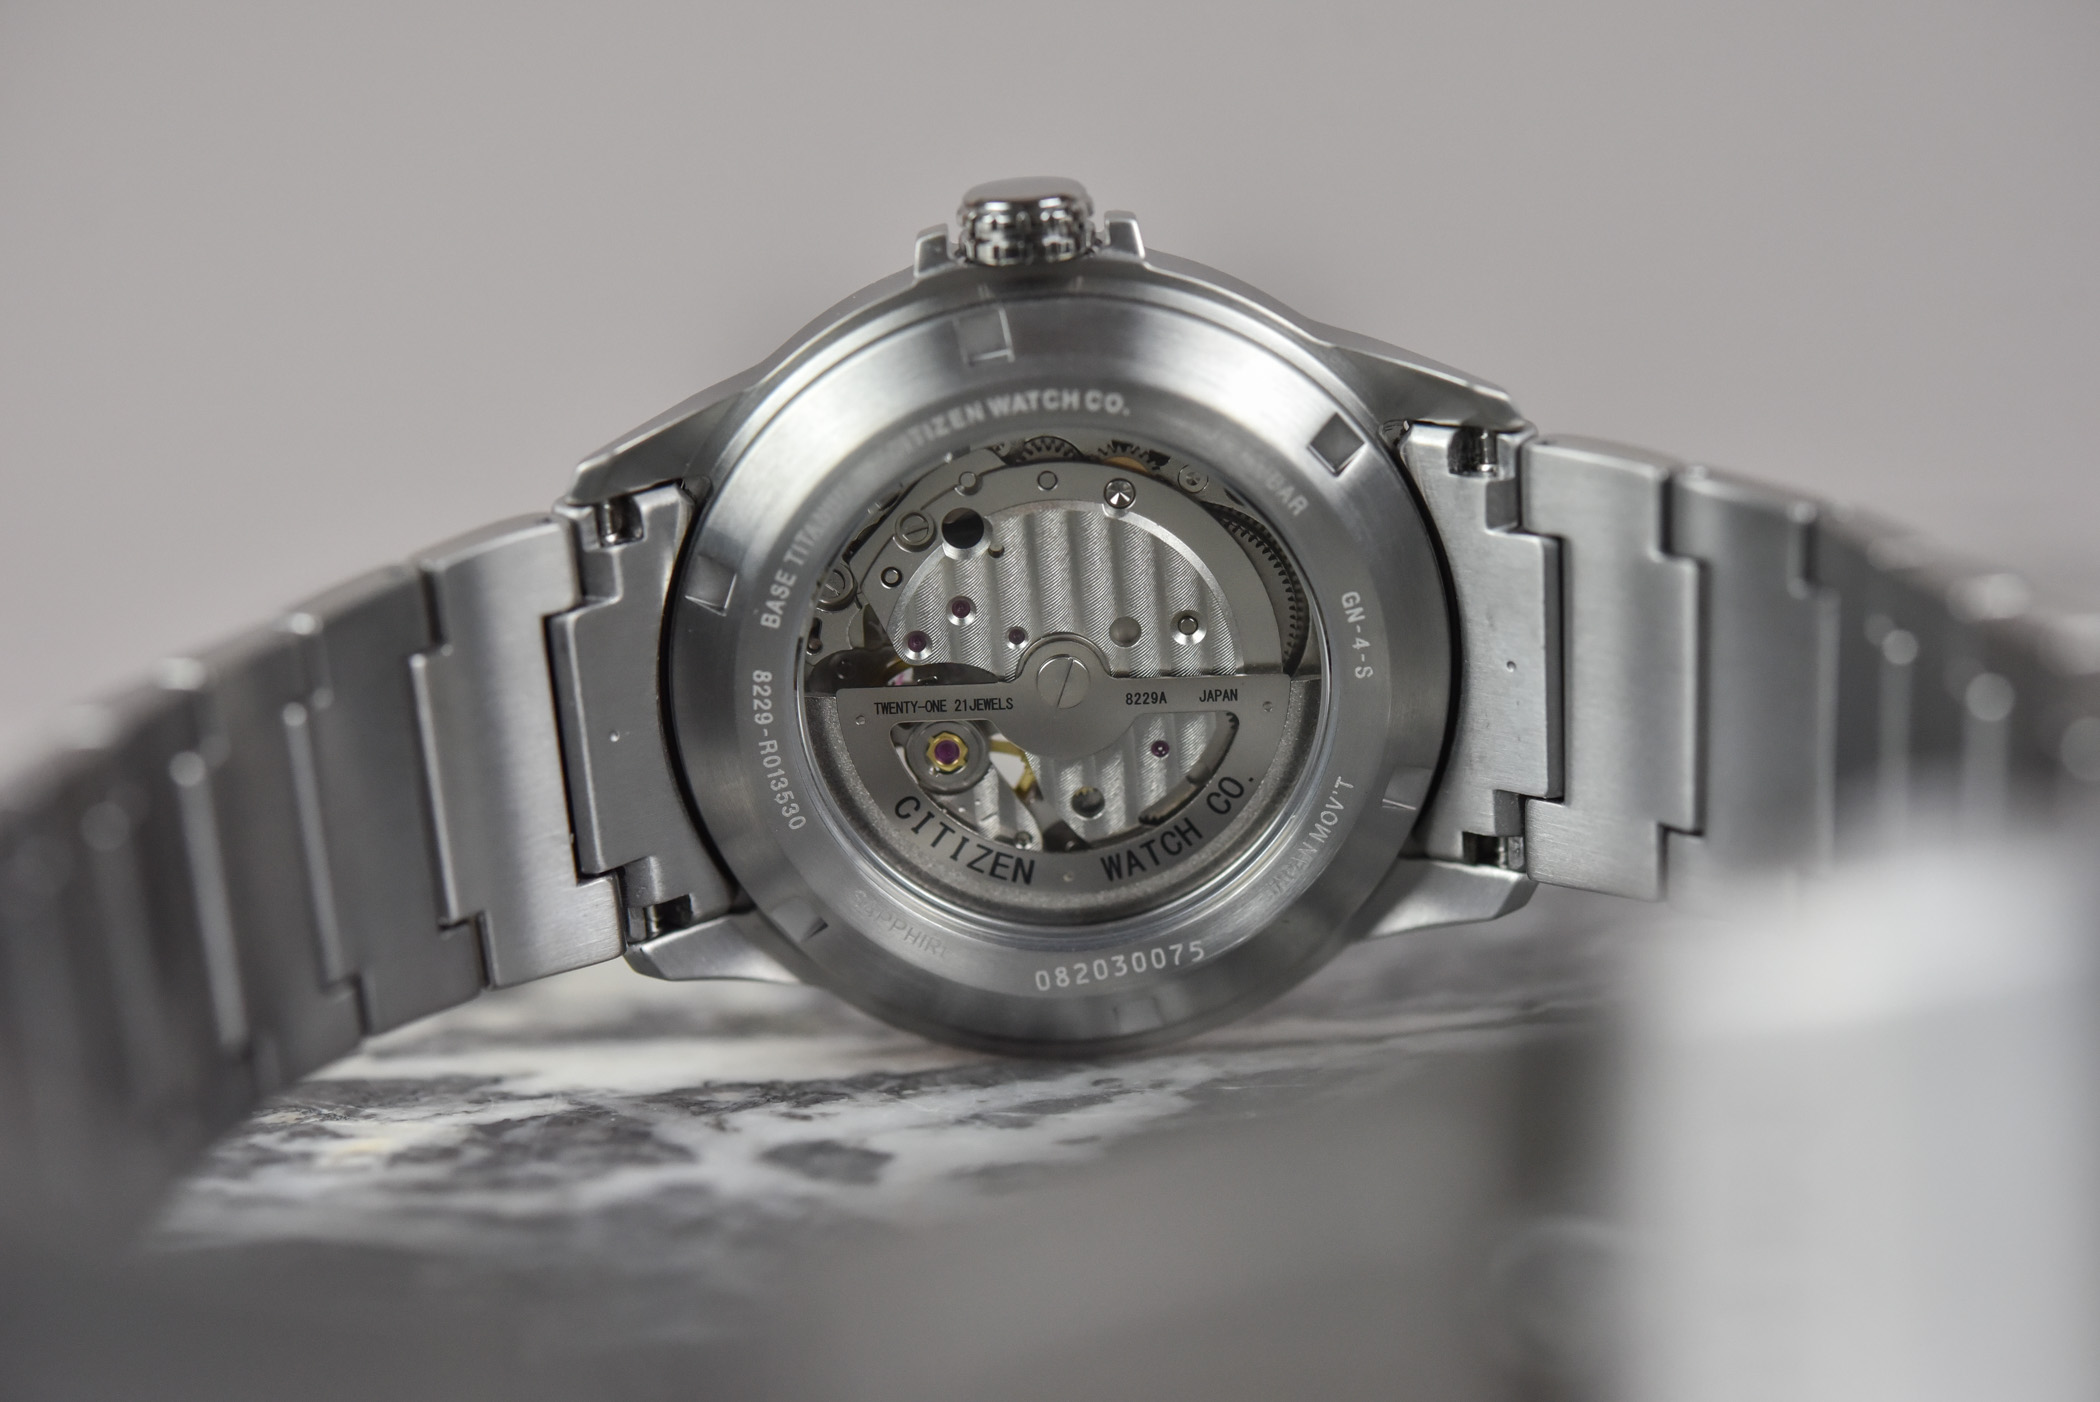 Наручные часы Citizen Super Titanium Mechanical NH9120 Collection, превосходное ценовое предложение